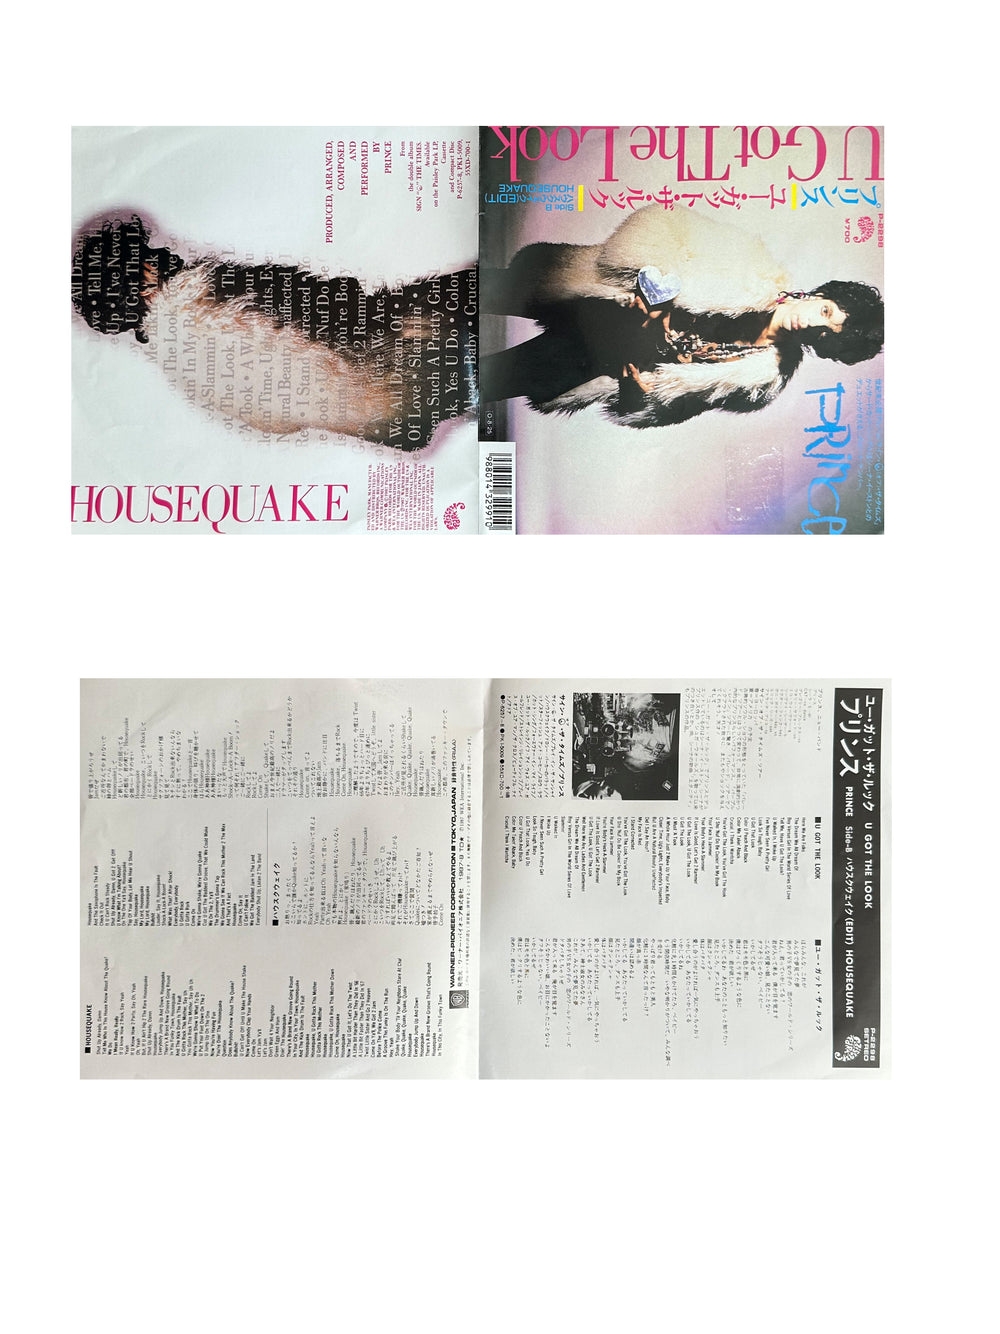 Prince – U Got The Look Vinyl 7" Single Japan Preloved: 1987